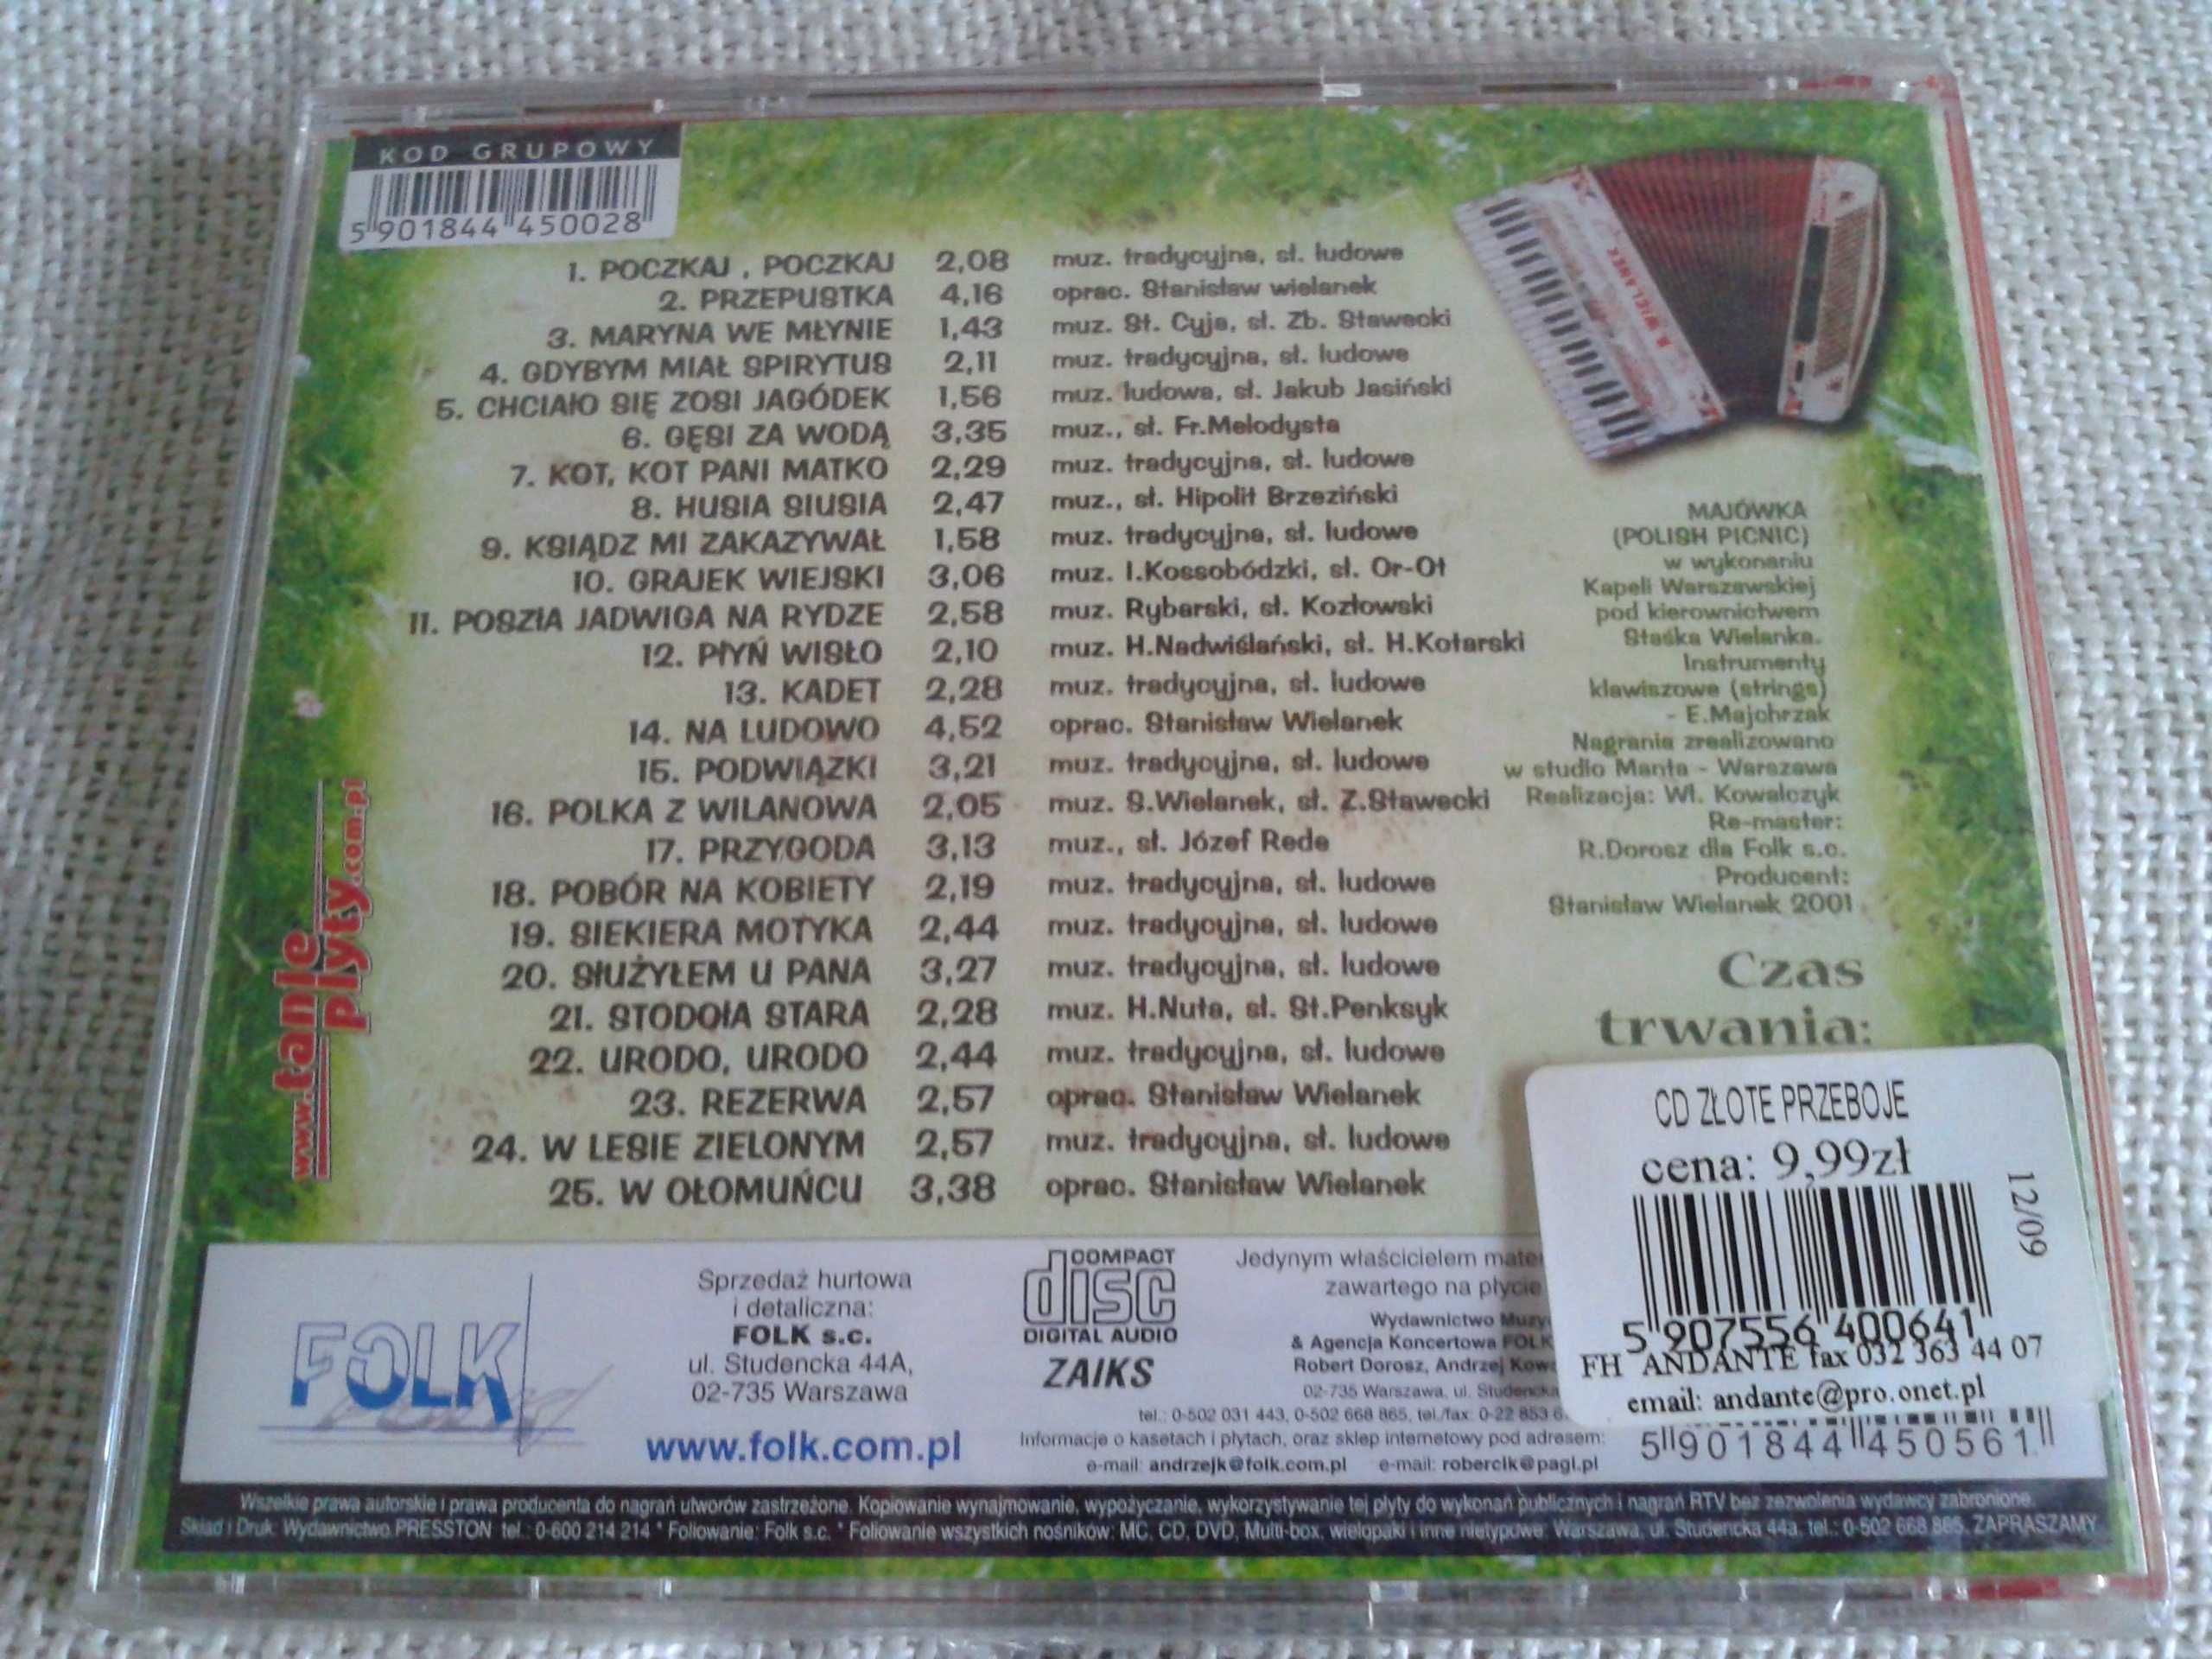 Stasiek Wielanek - Majówka  CD